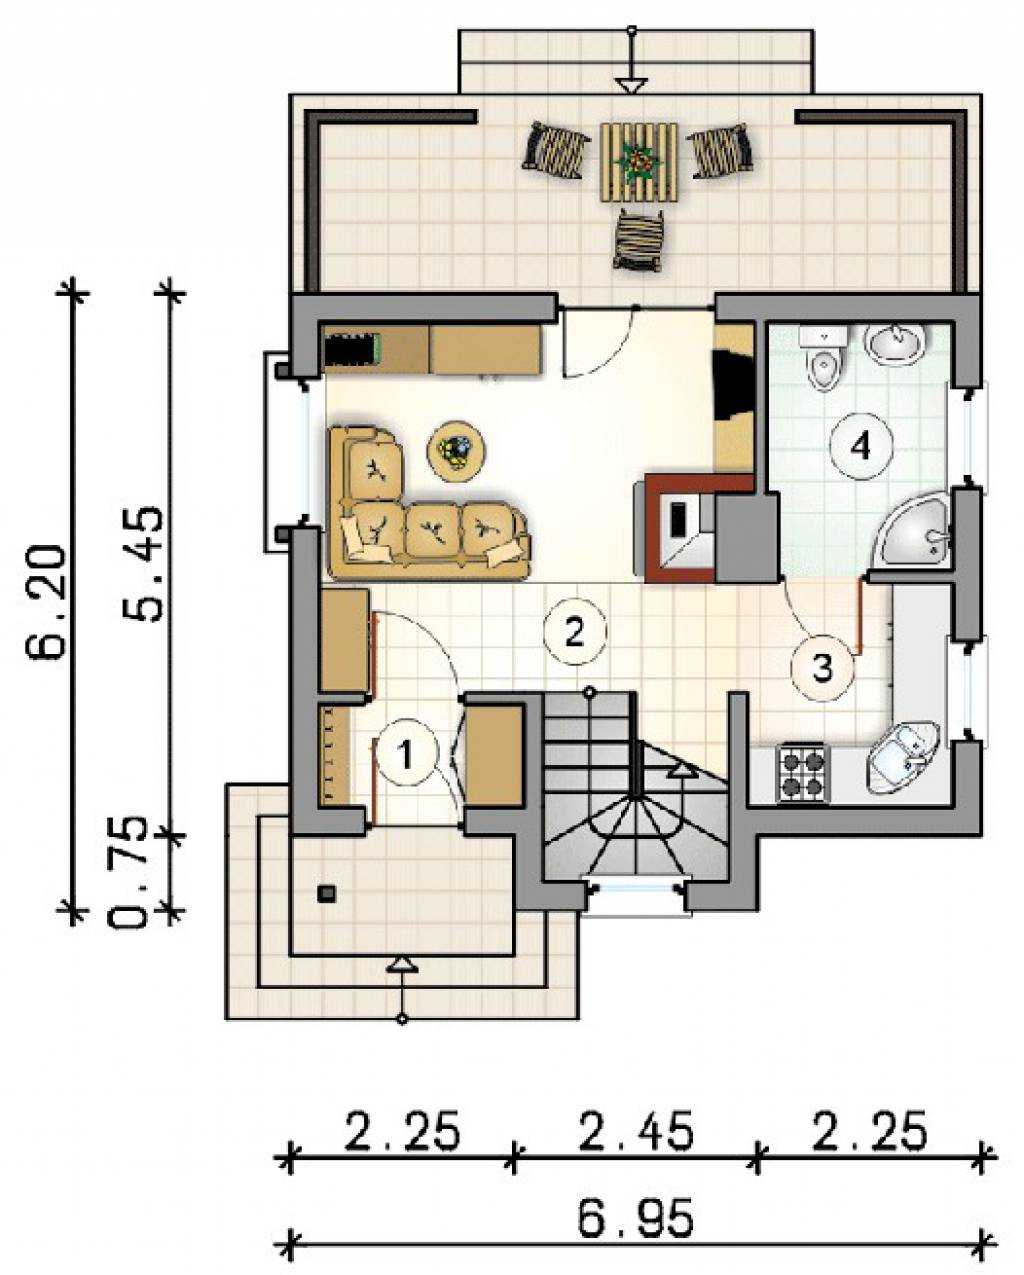 Дом 6 на 6: составление проекта, планировка одноэтажного и двухэтажного жилья для постоянного проживания